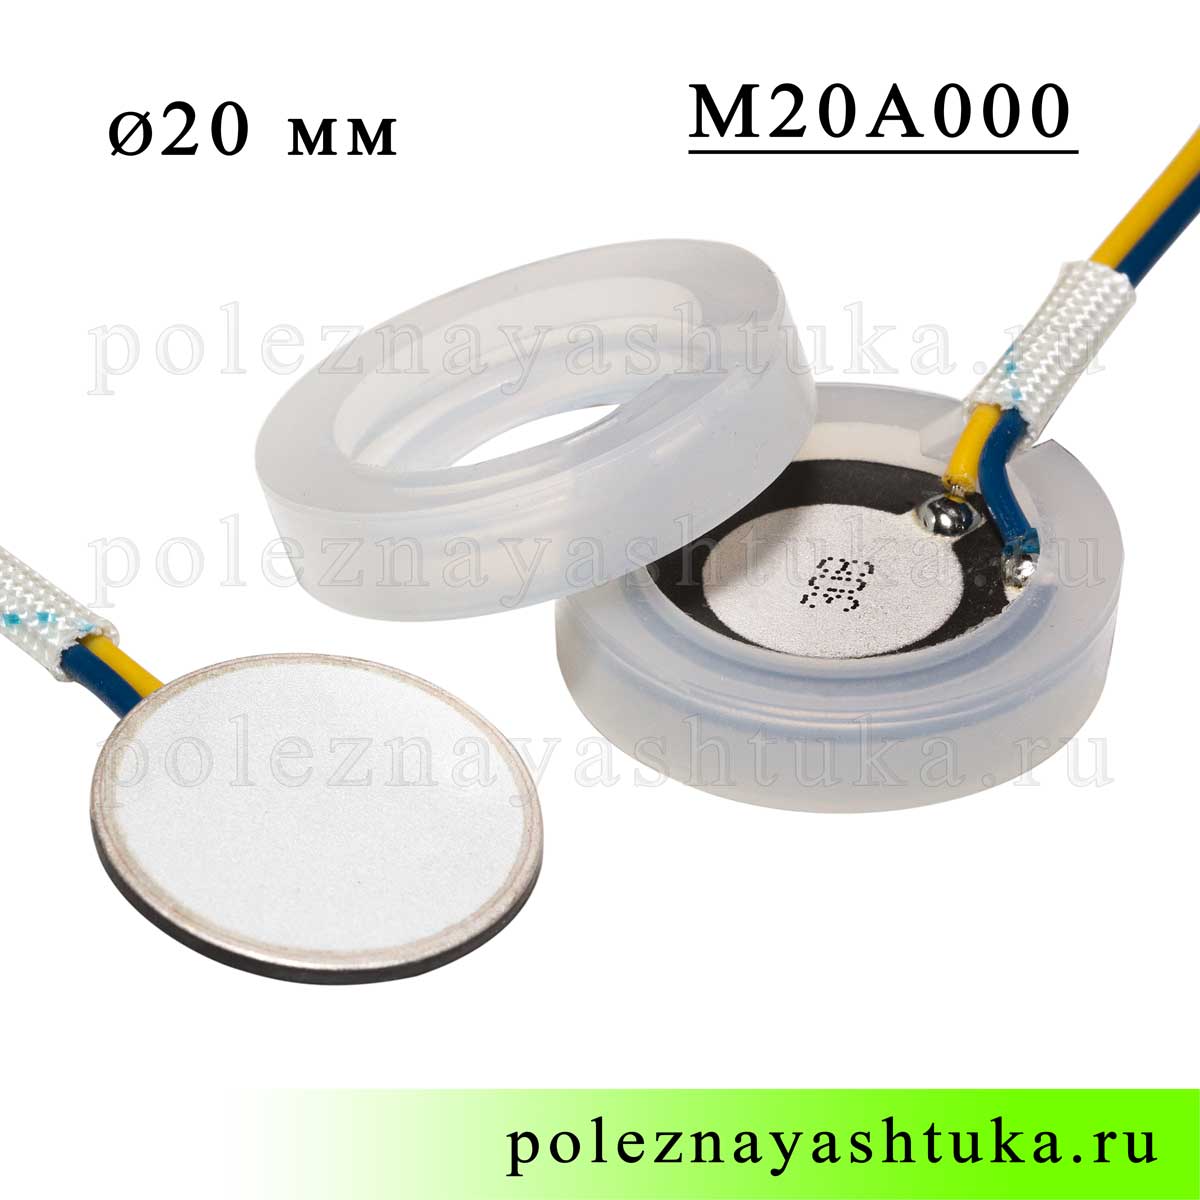 Ультразвуковой пьезоэлемент для увлажнителя воздуха, 20 мм диаметр, с проводами, фото